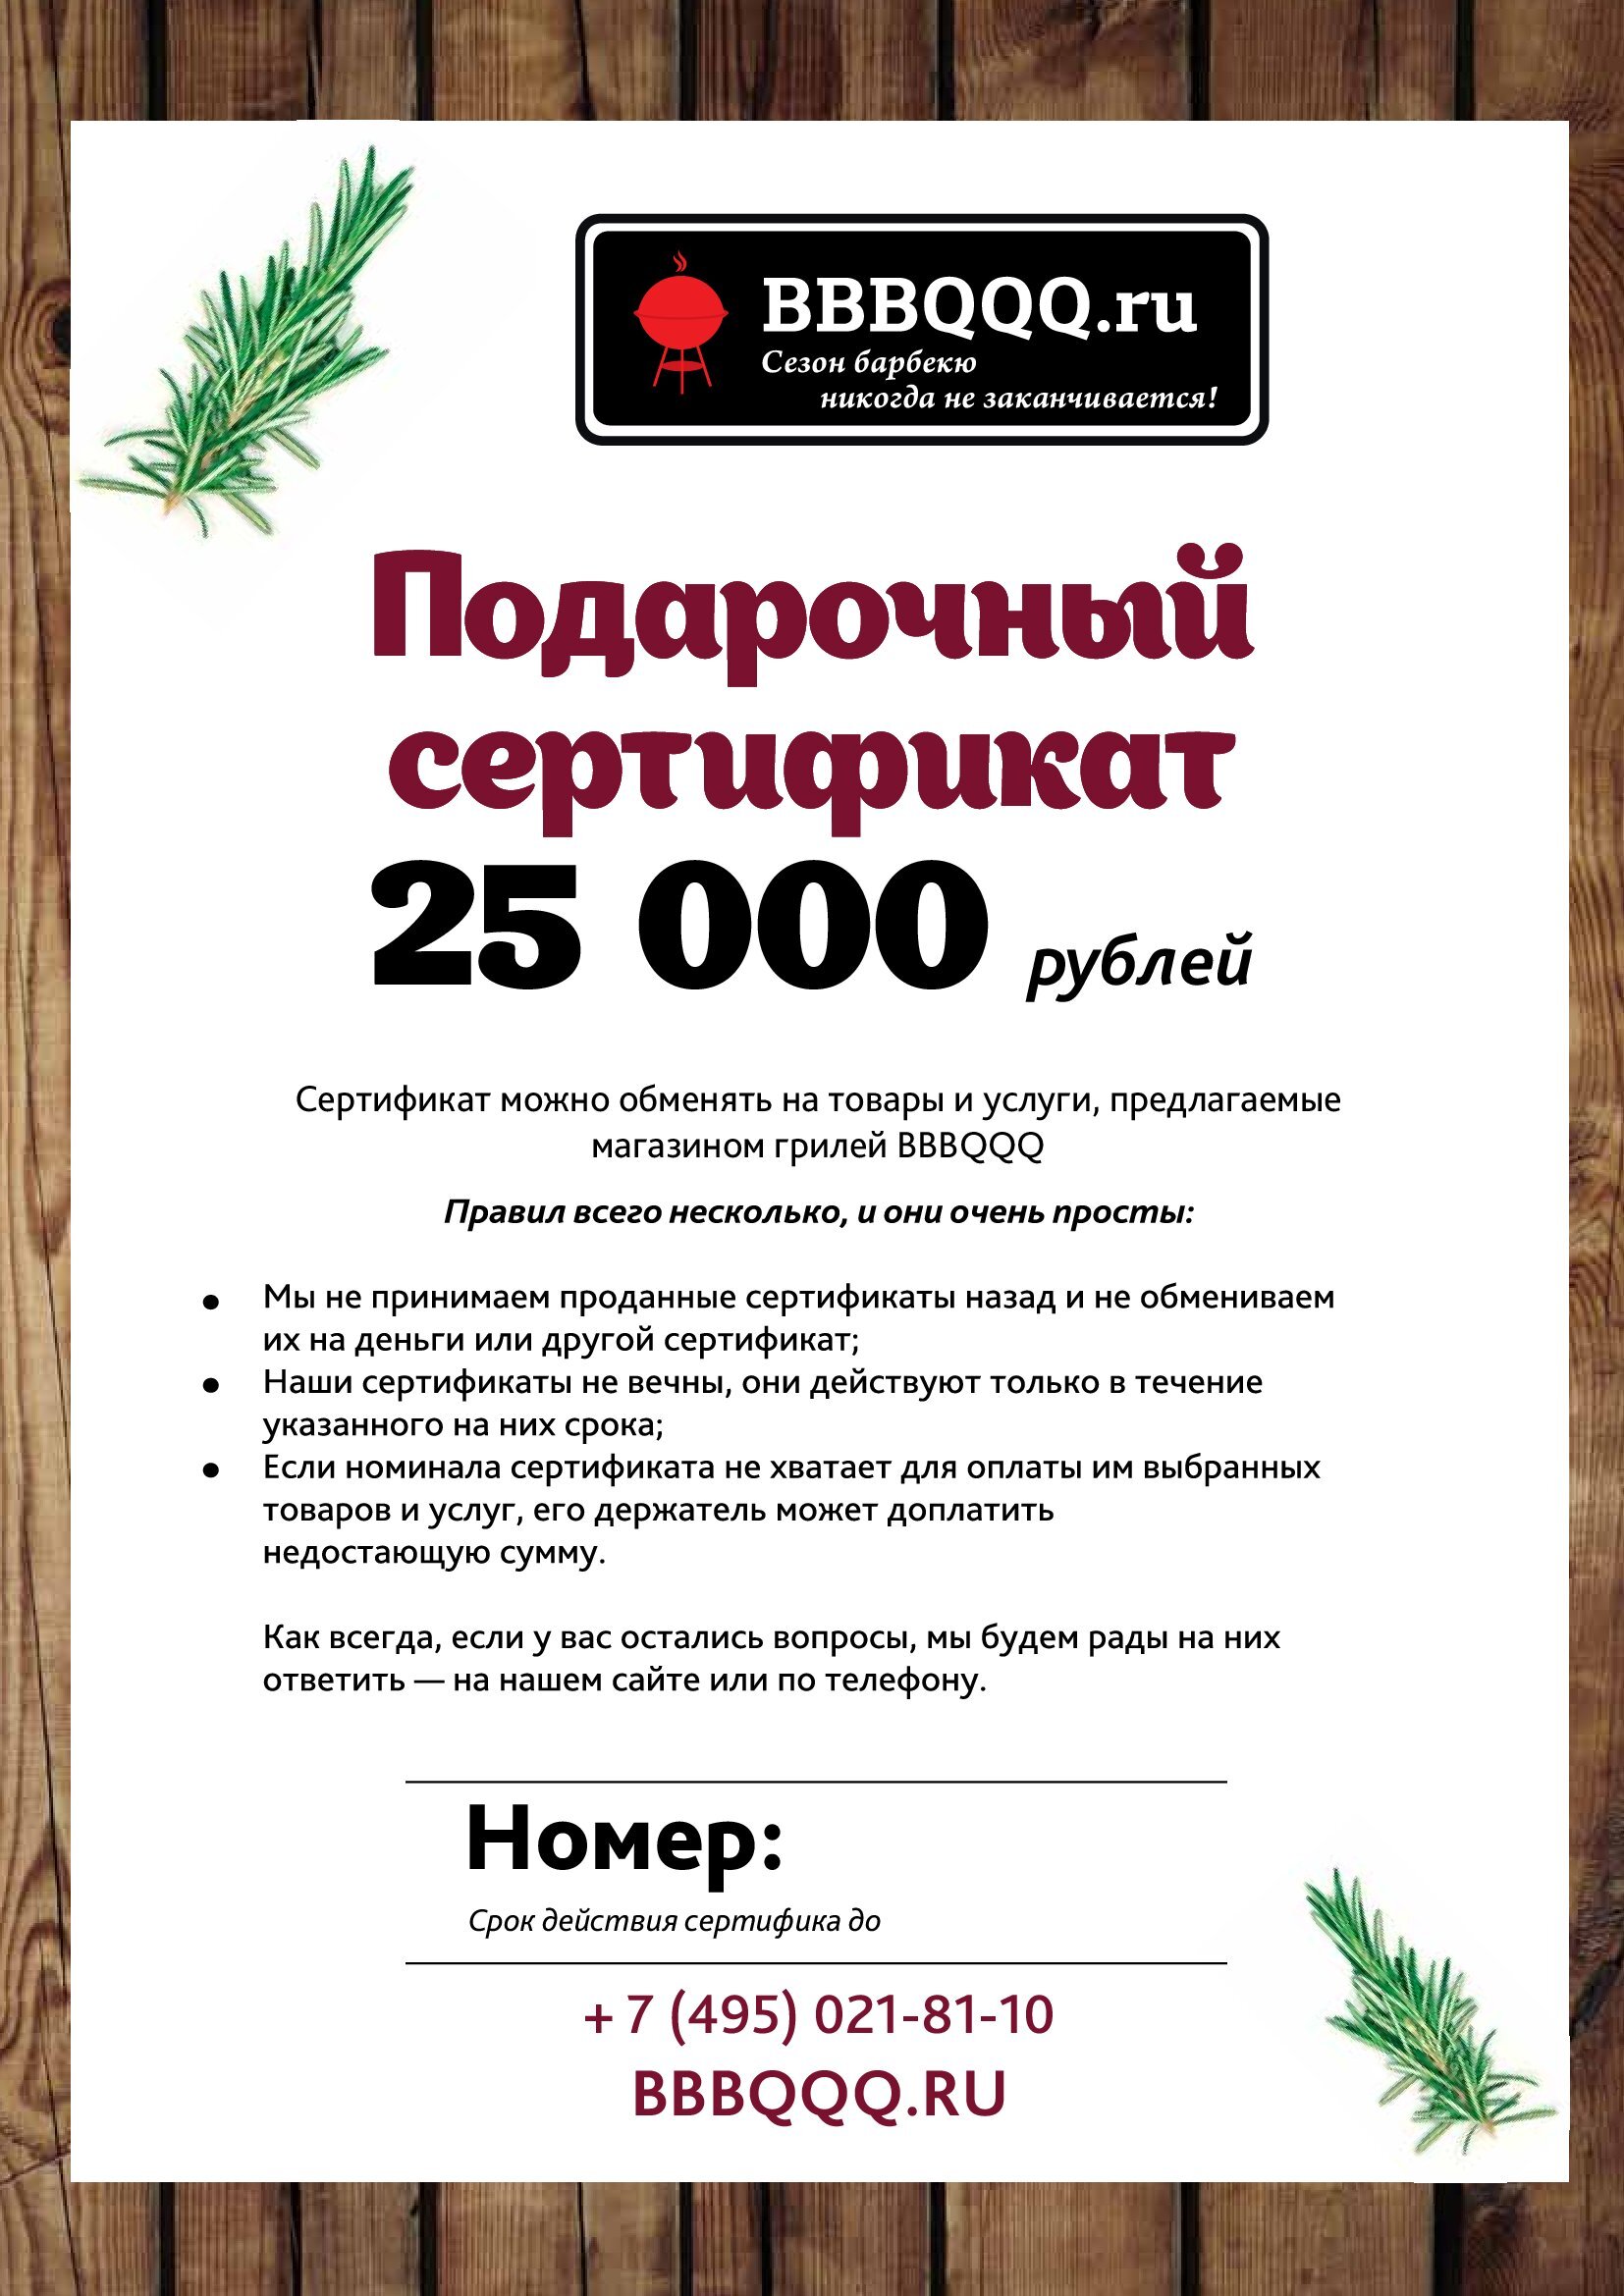 Подарочный сертификат BBBQQQ 25 000 руб